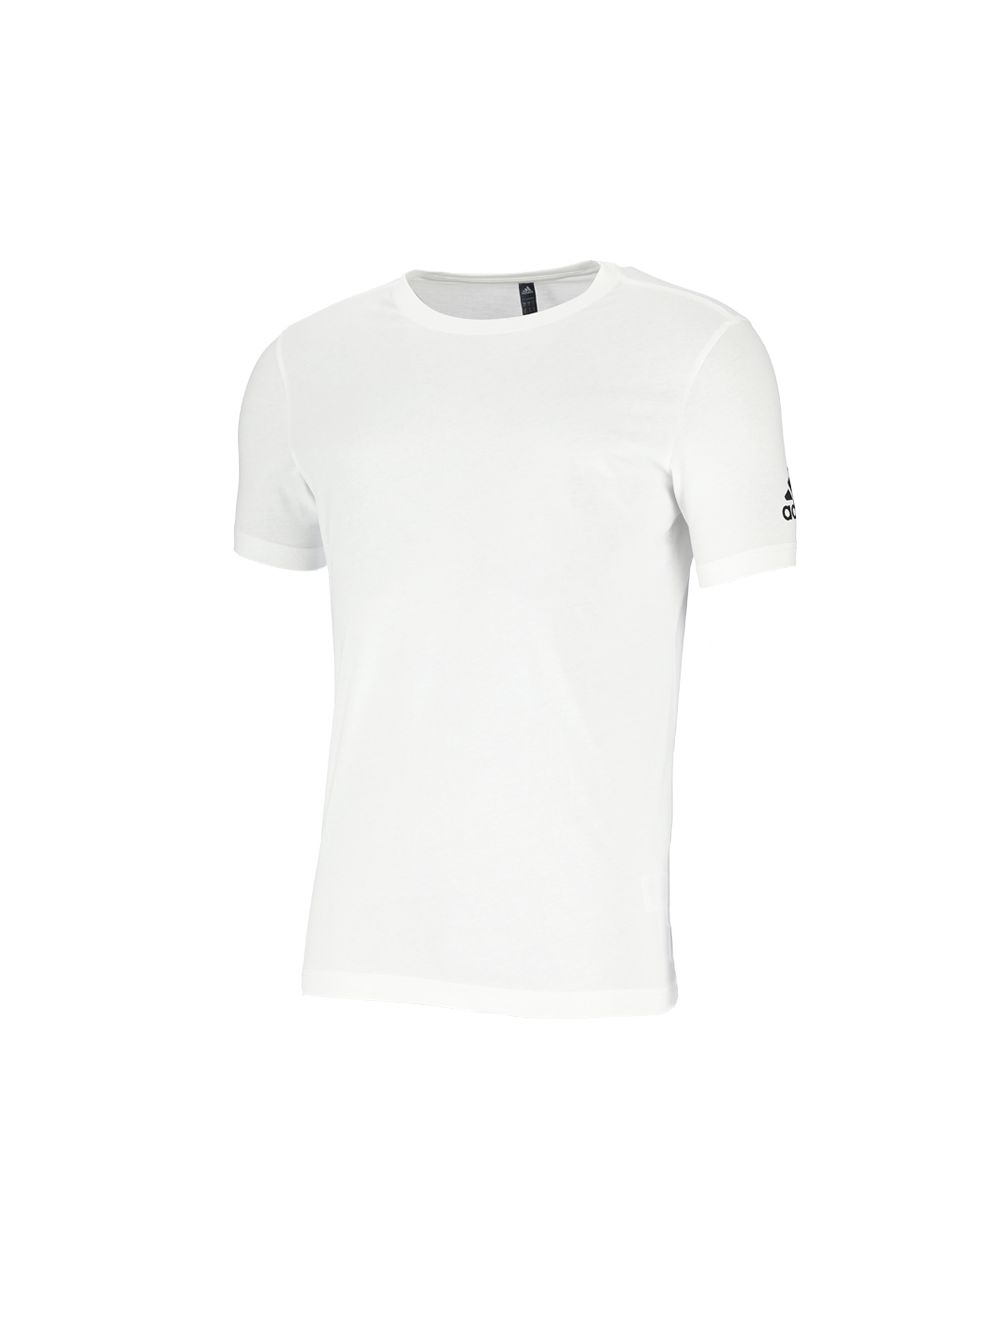 Shop adidas Performance Mens T-Shirt White | Studio 88